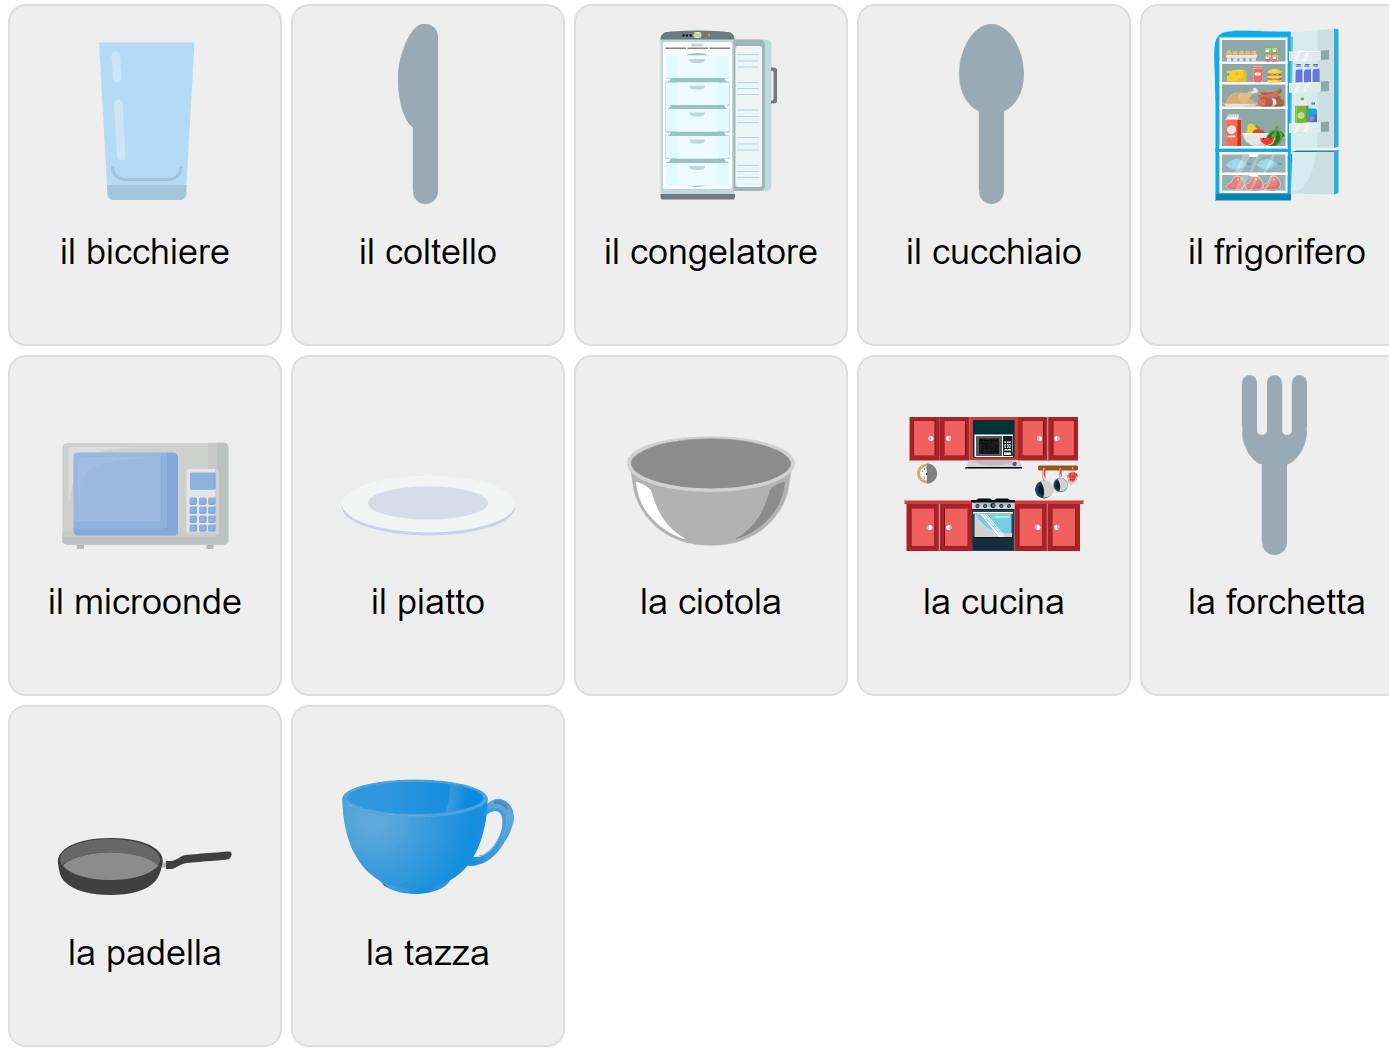 Köksvokabulär på italienska